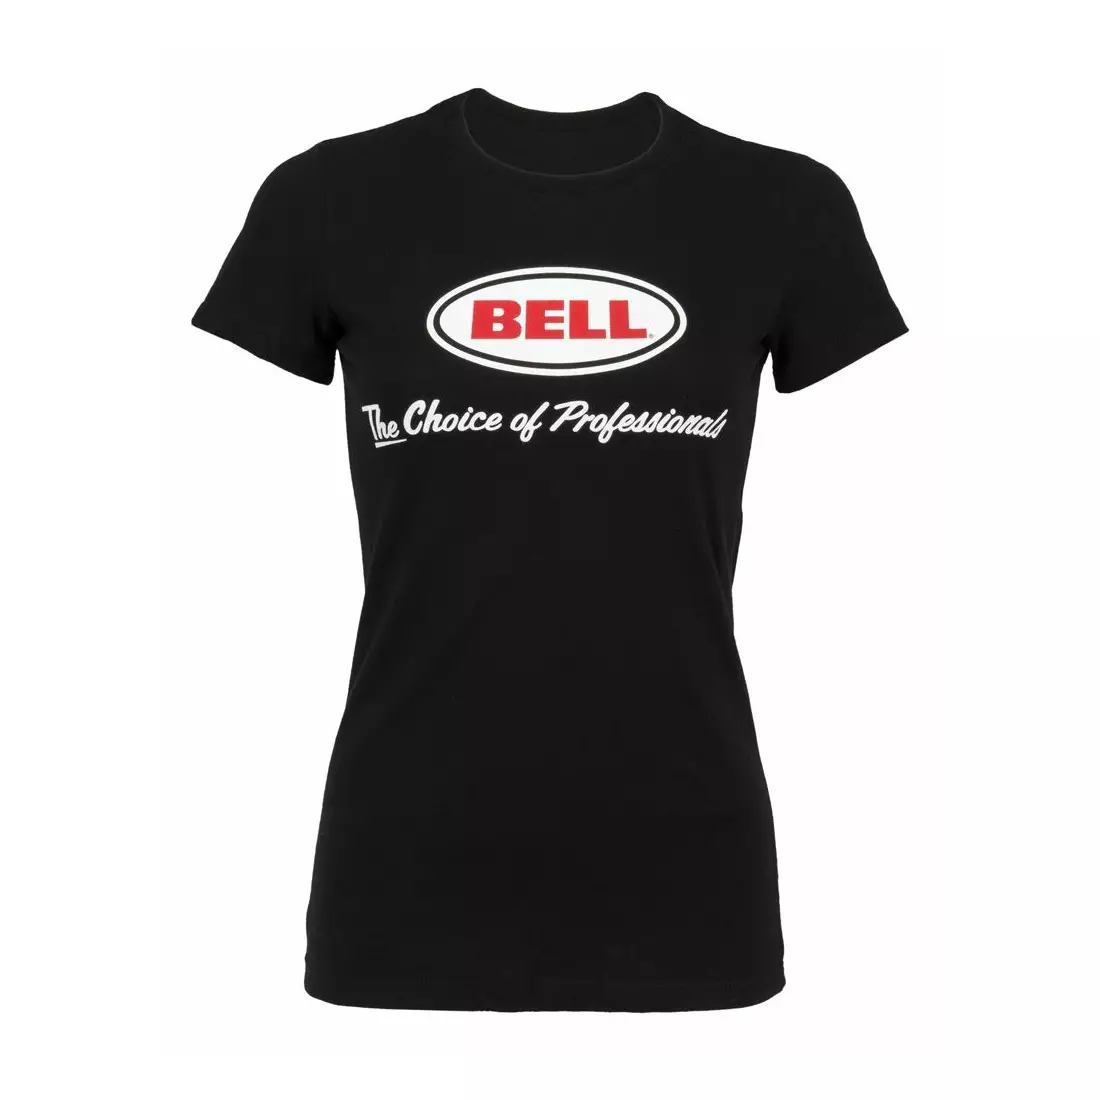 BELL dámské tričko s krátkým rukávem BASIC CHOICE OF PROS černé BEL-7070720